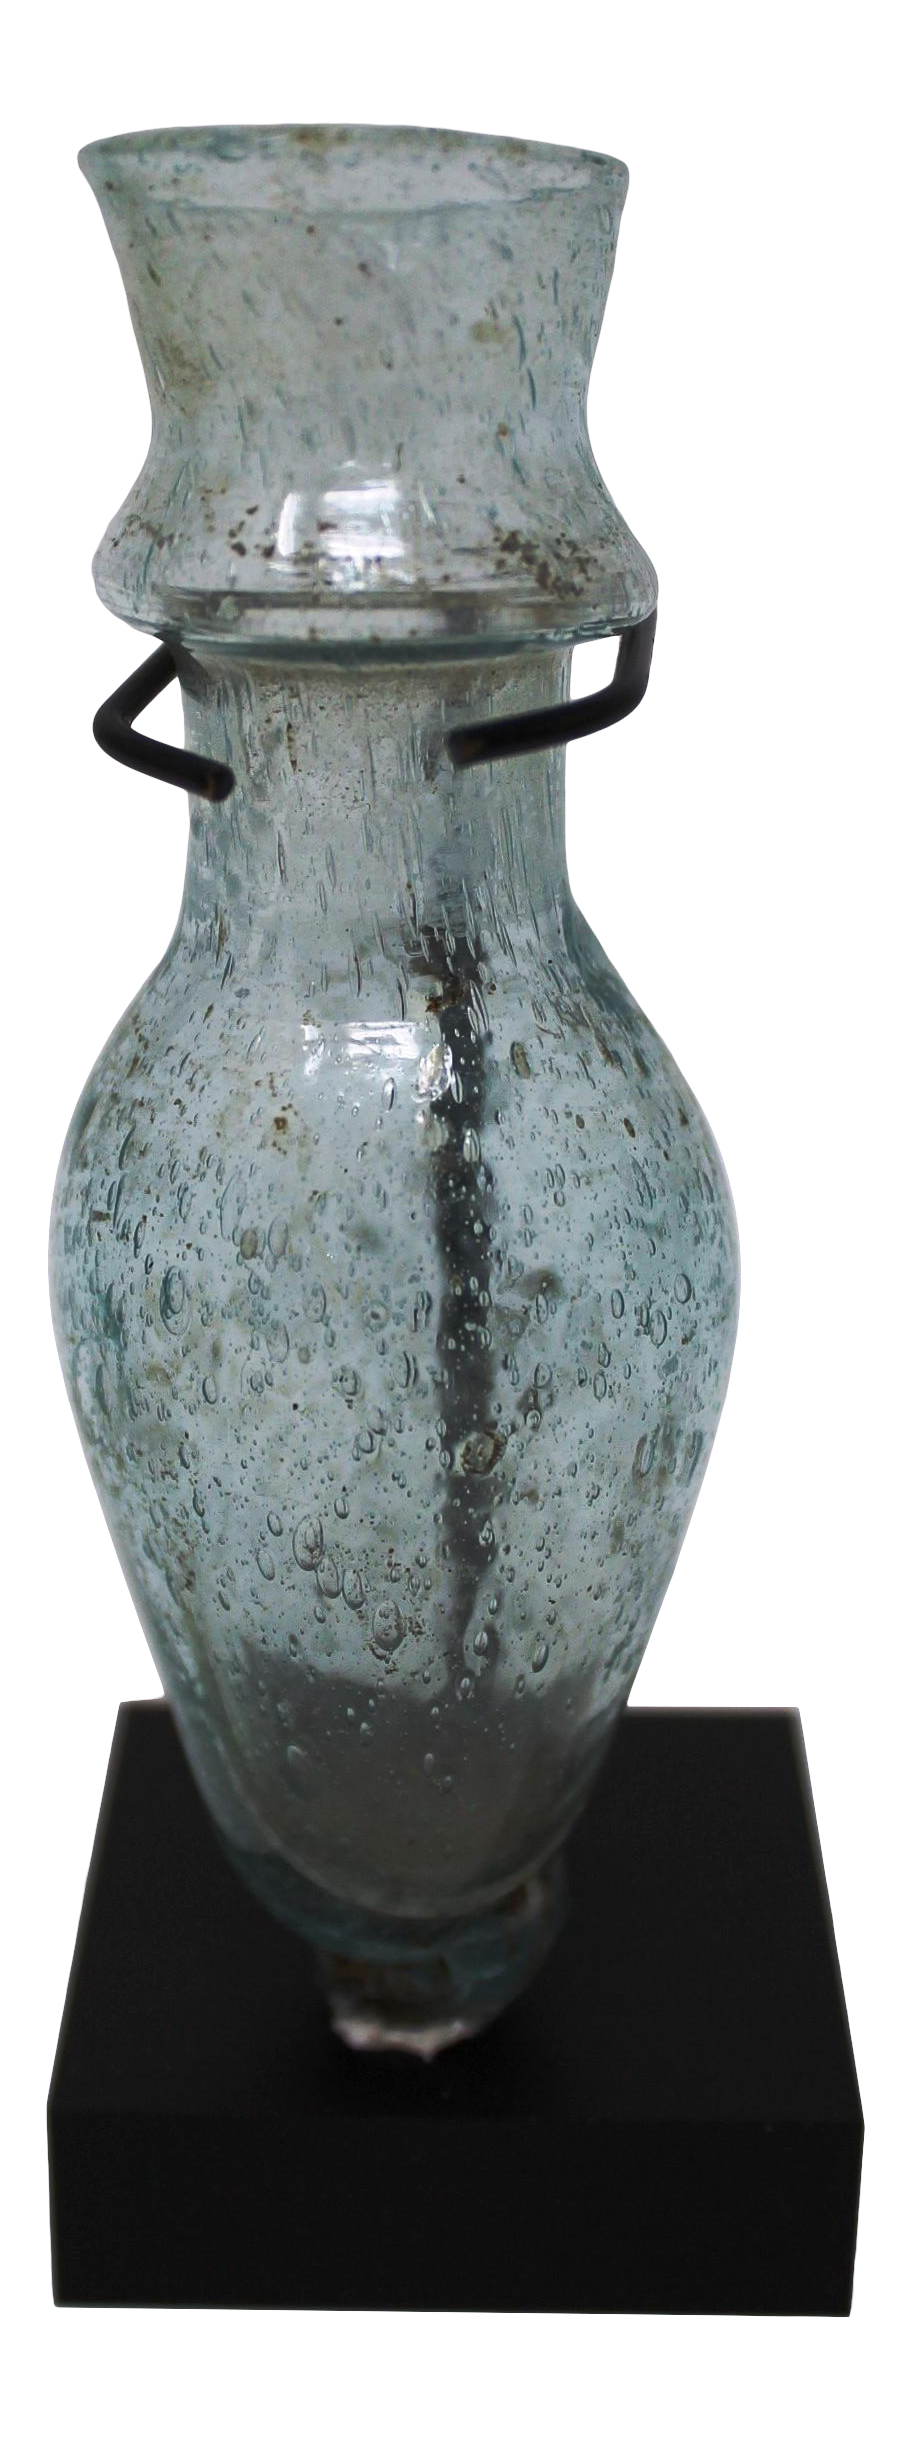 Ancient Persian Unguentarium Amphora